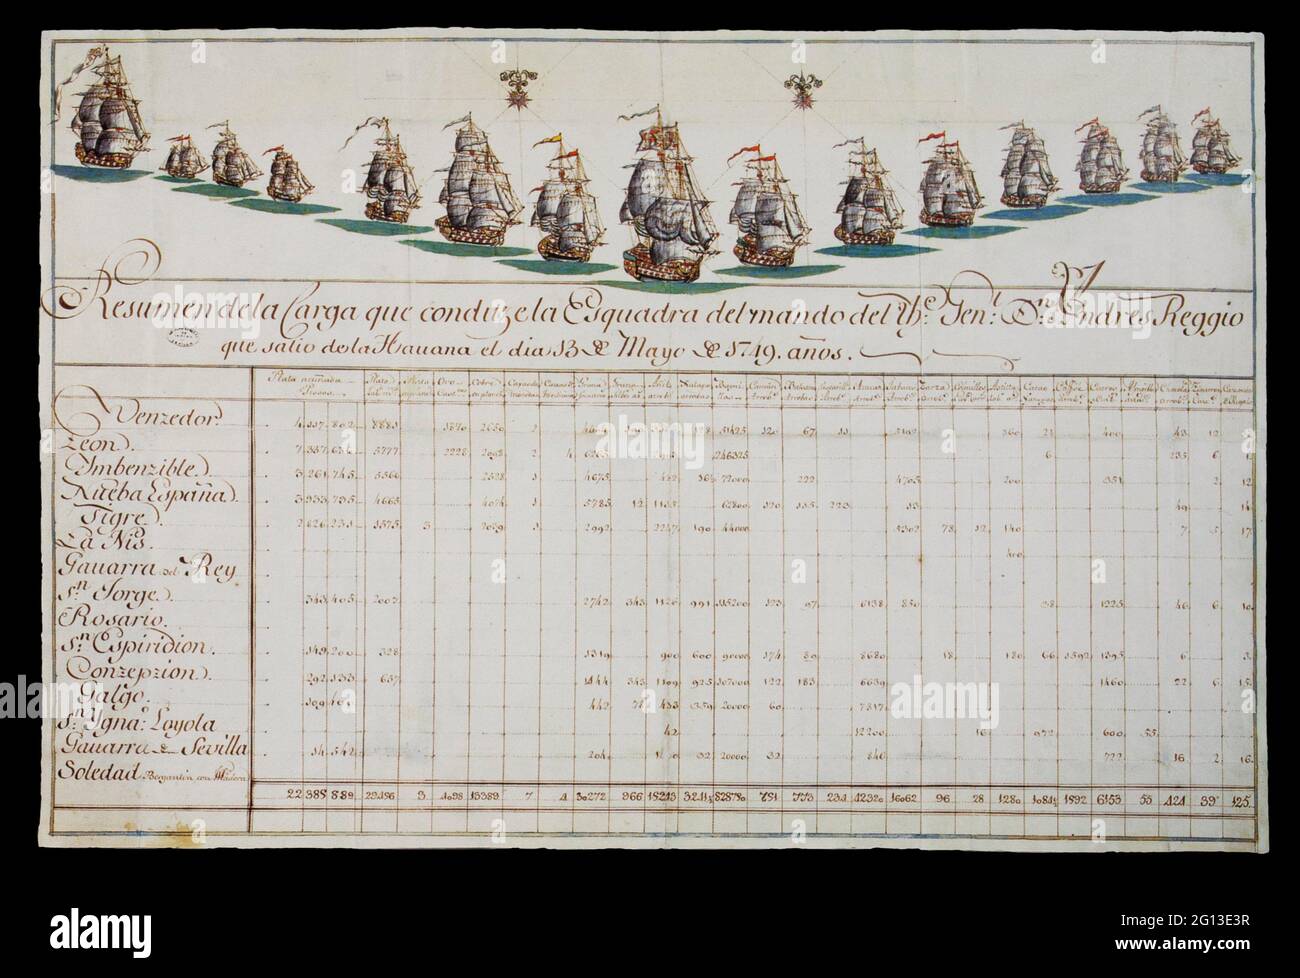 Manifesto di consolidamento della flotta di tesori spagnola comandato dal Capitano Generale della marina Andres Reggio, 1749. Archivio Generale delle Indie. Foto Stock